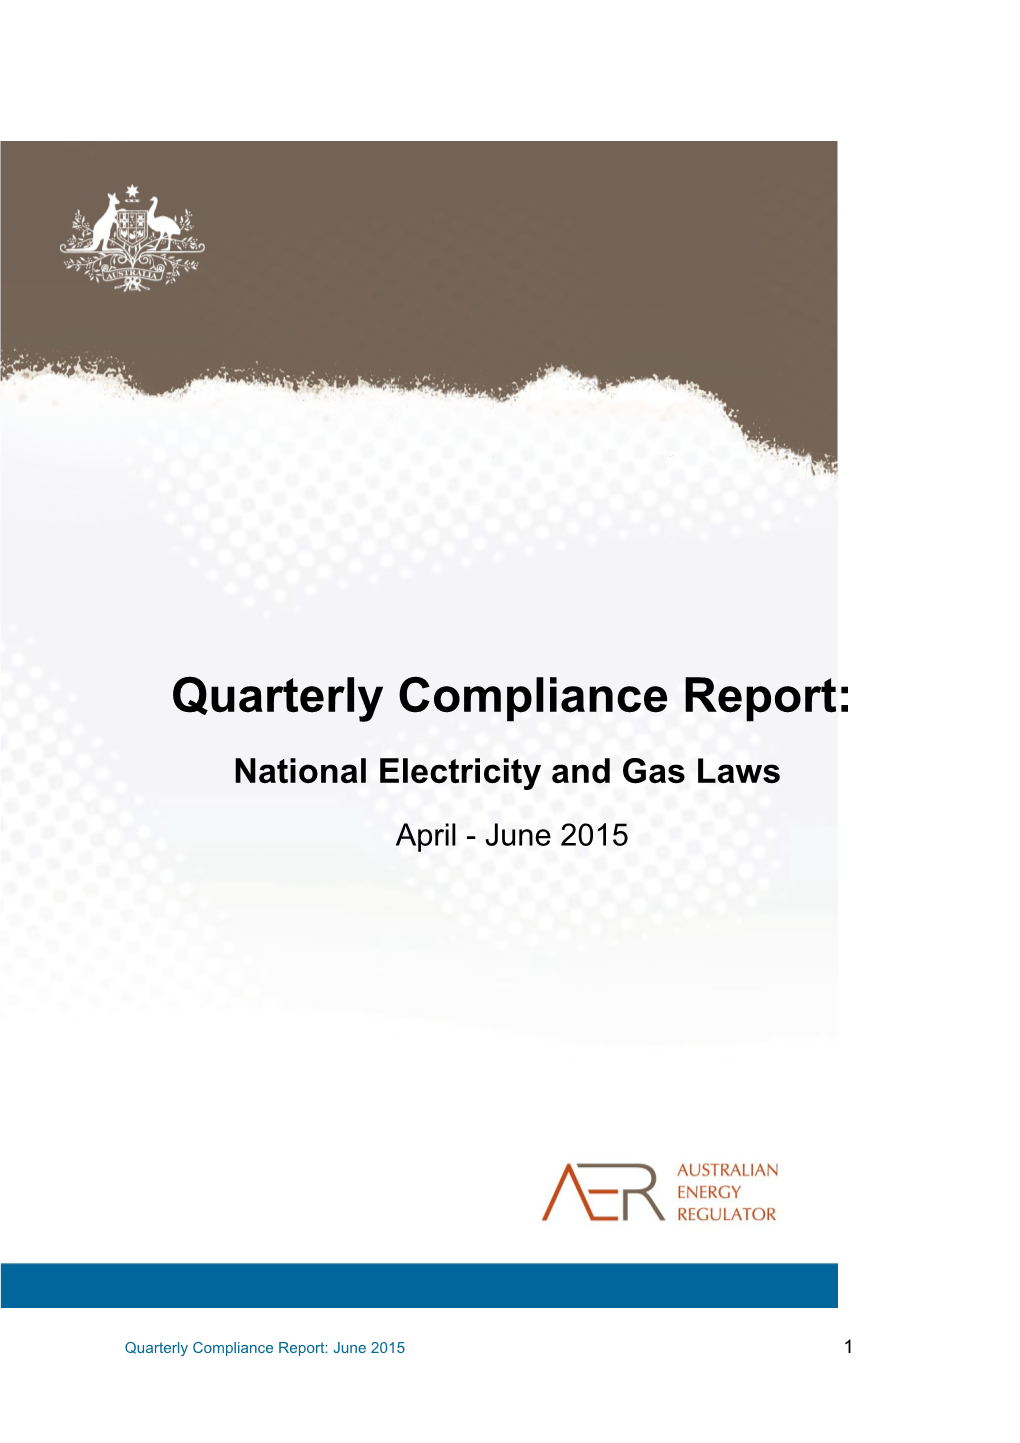 Quarterly Compliance Report April - June 2015